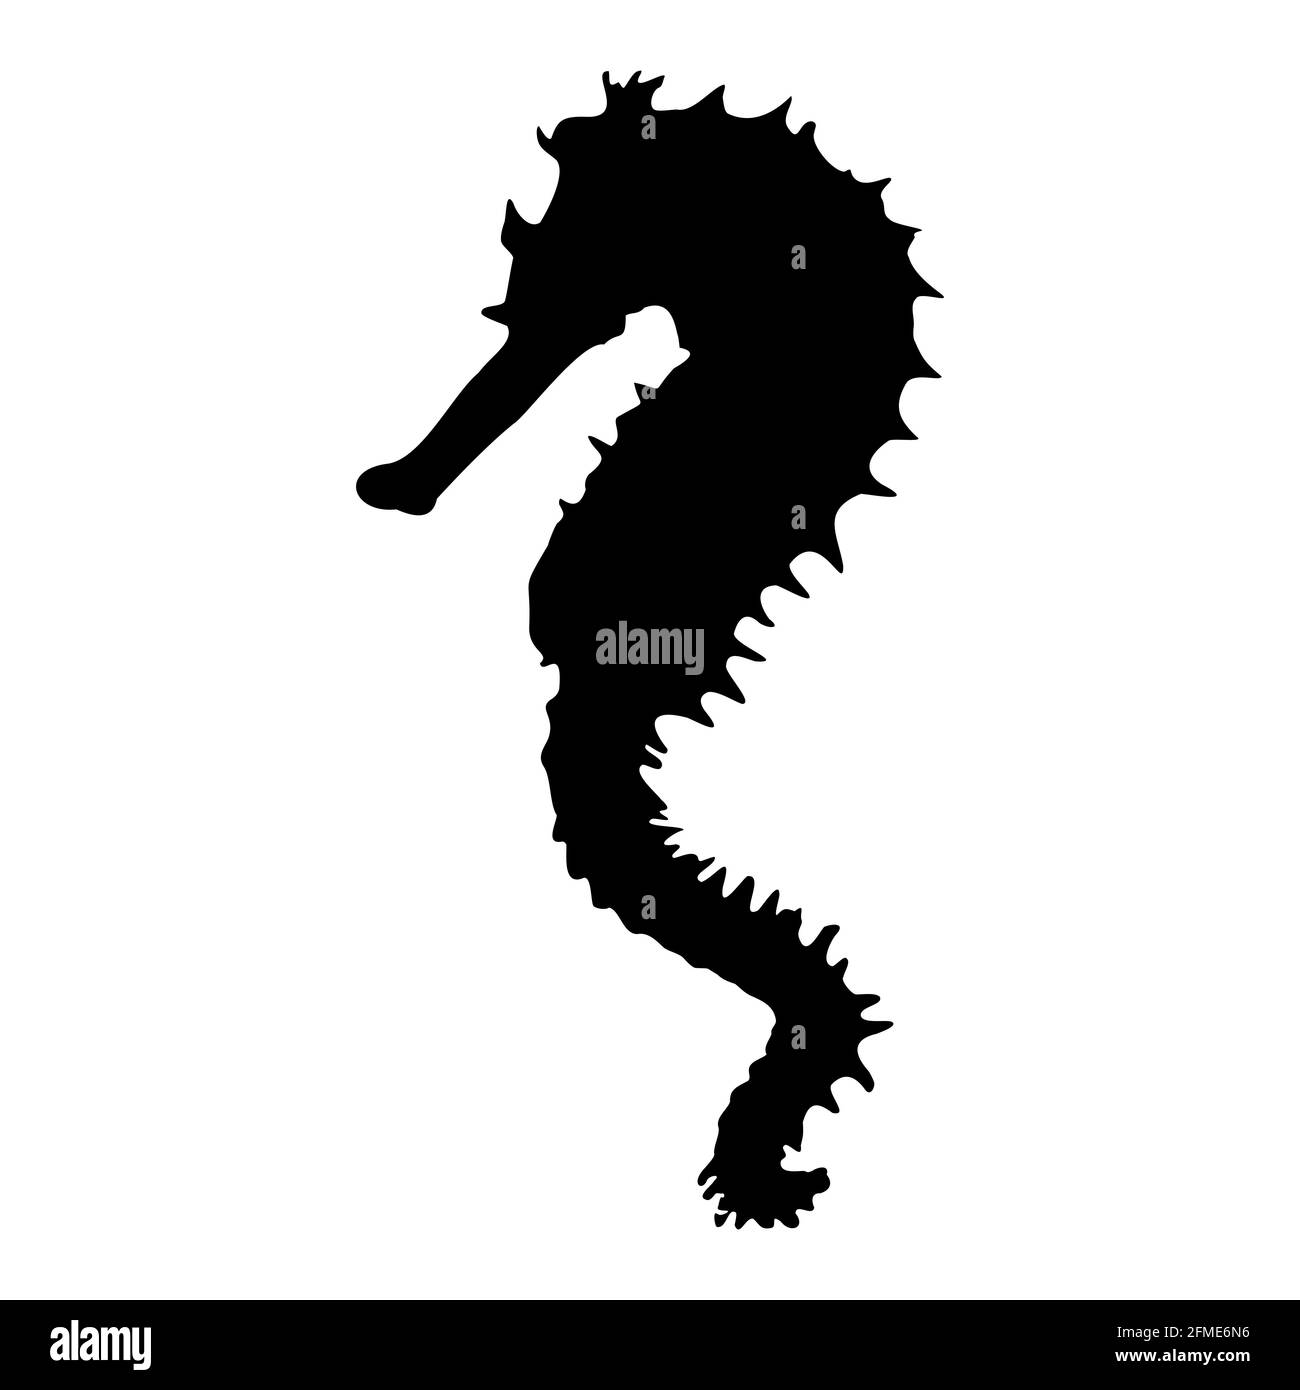 Sea Horse. Schwarze isolierte Silhouette eines Meerestieres auf weißem Hintergrund. Vektorgrafik Clipart. Stock Vektor